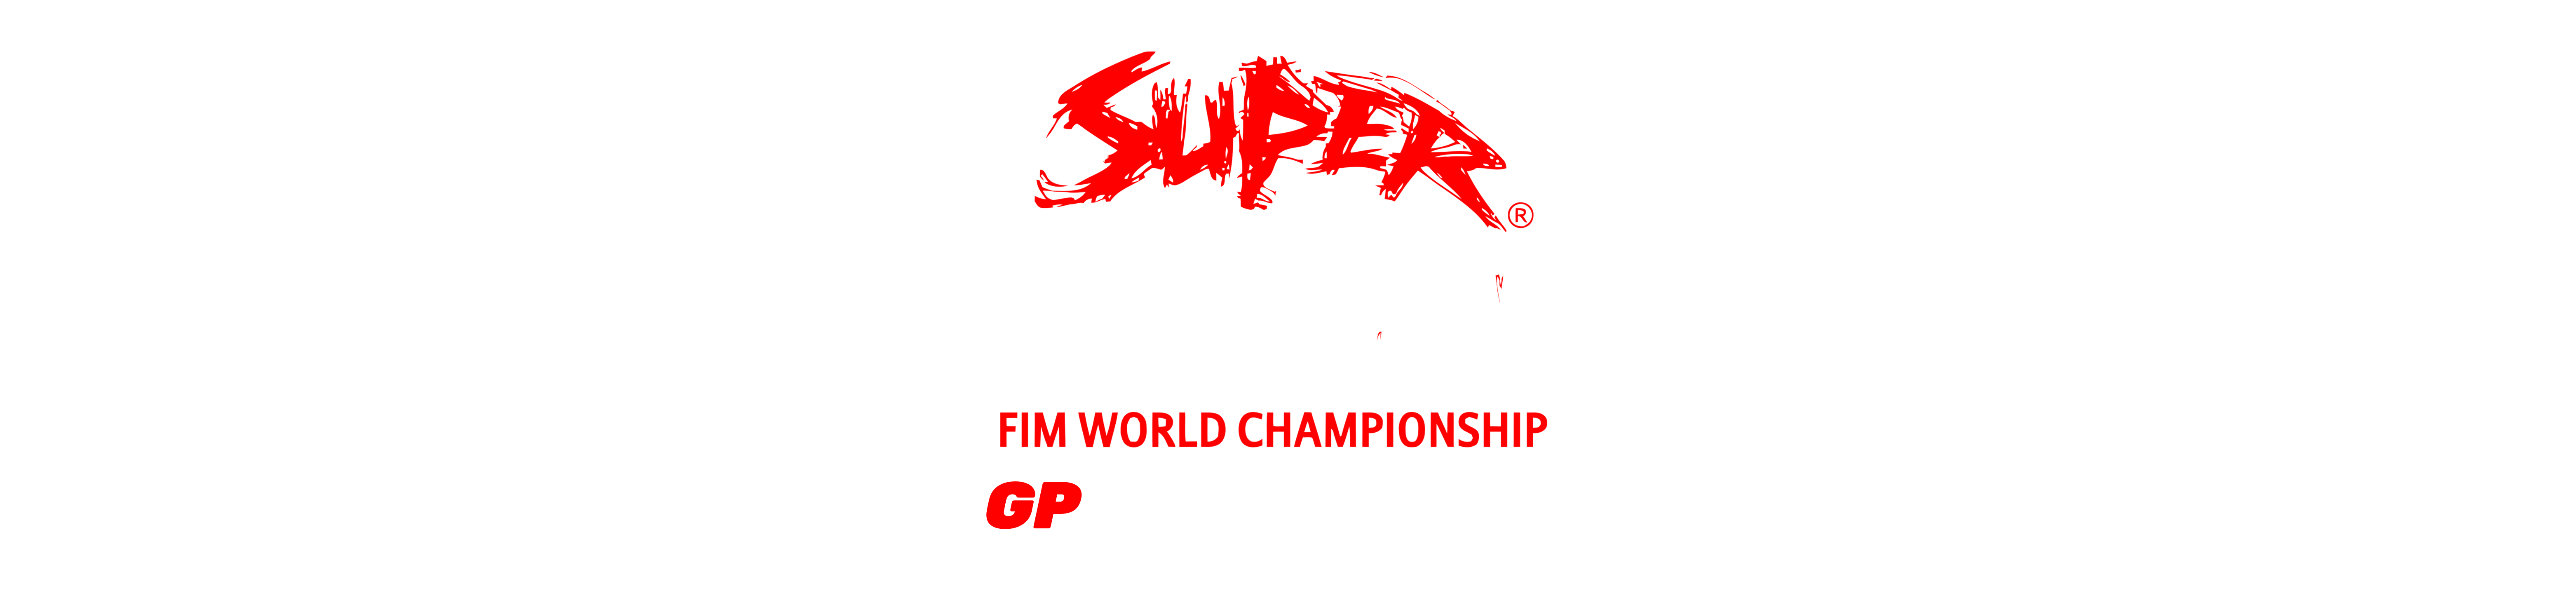 Superenduro GP of Hungary